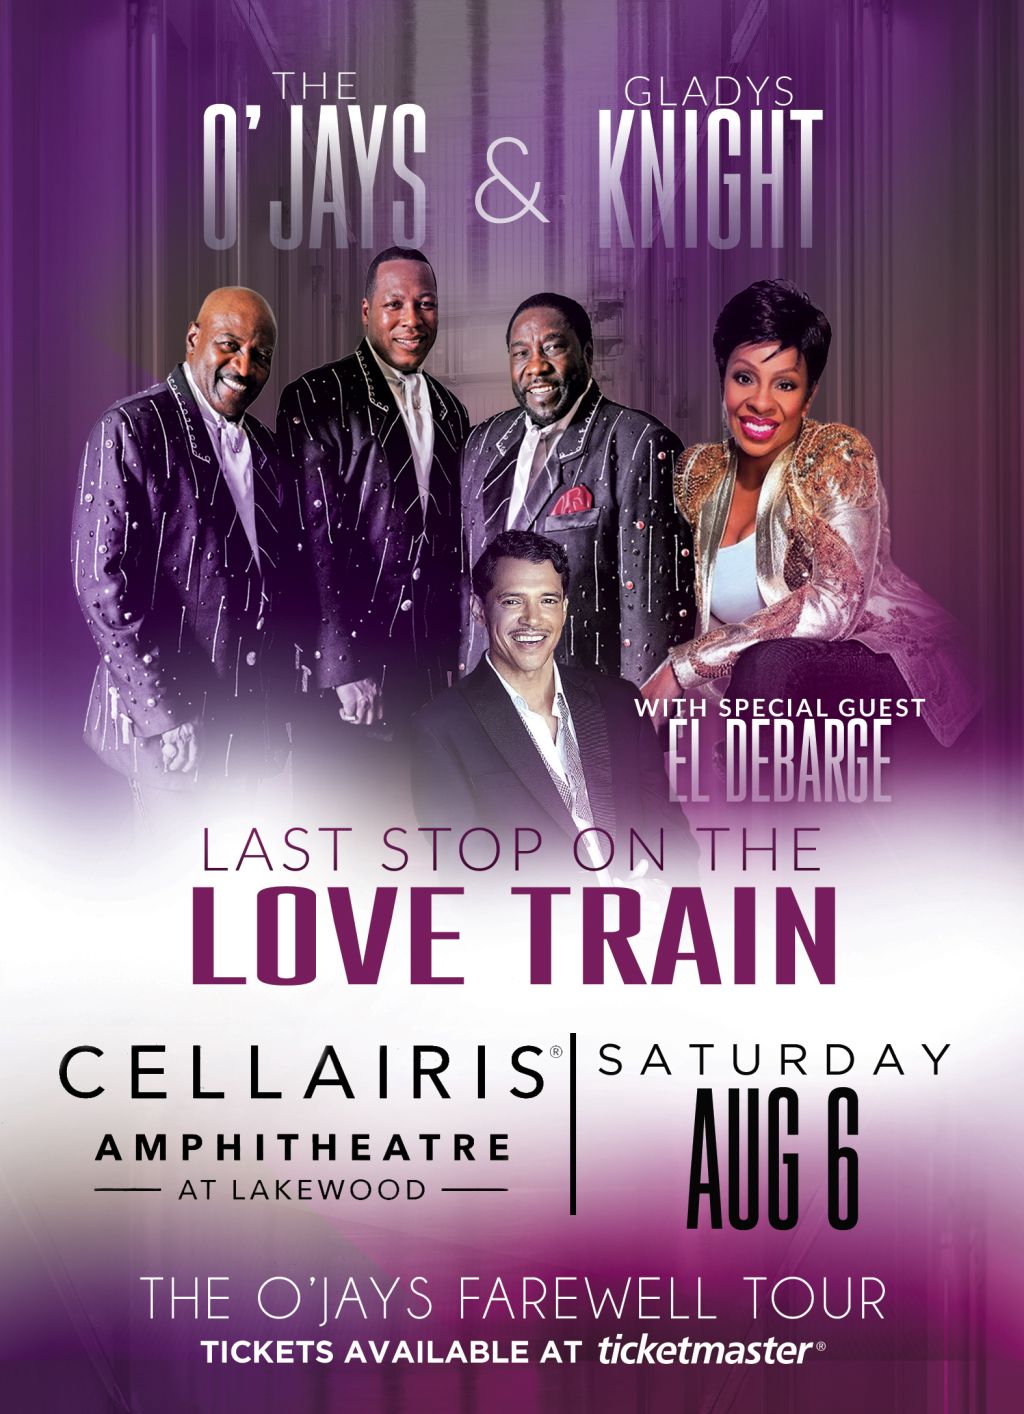 Cellairis Amphitheater Lakewood | The O'jays Farewell Tour